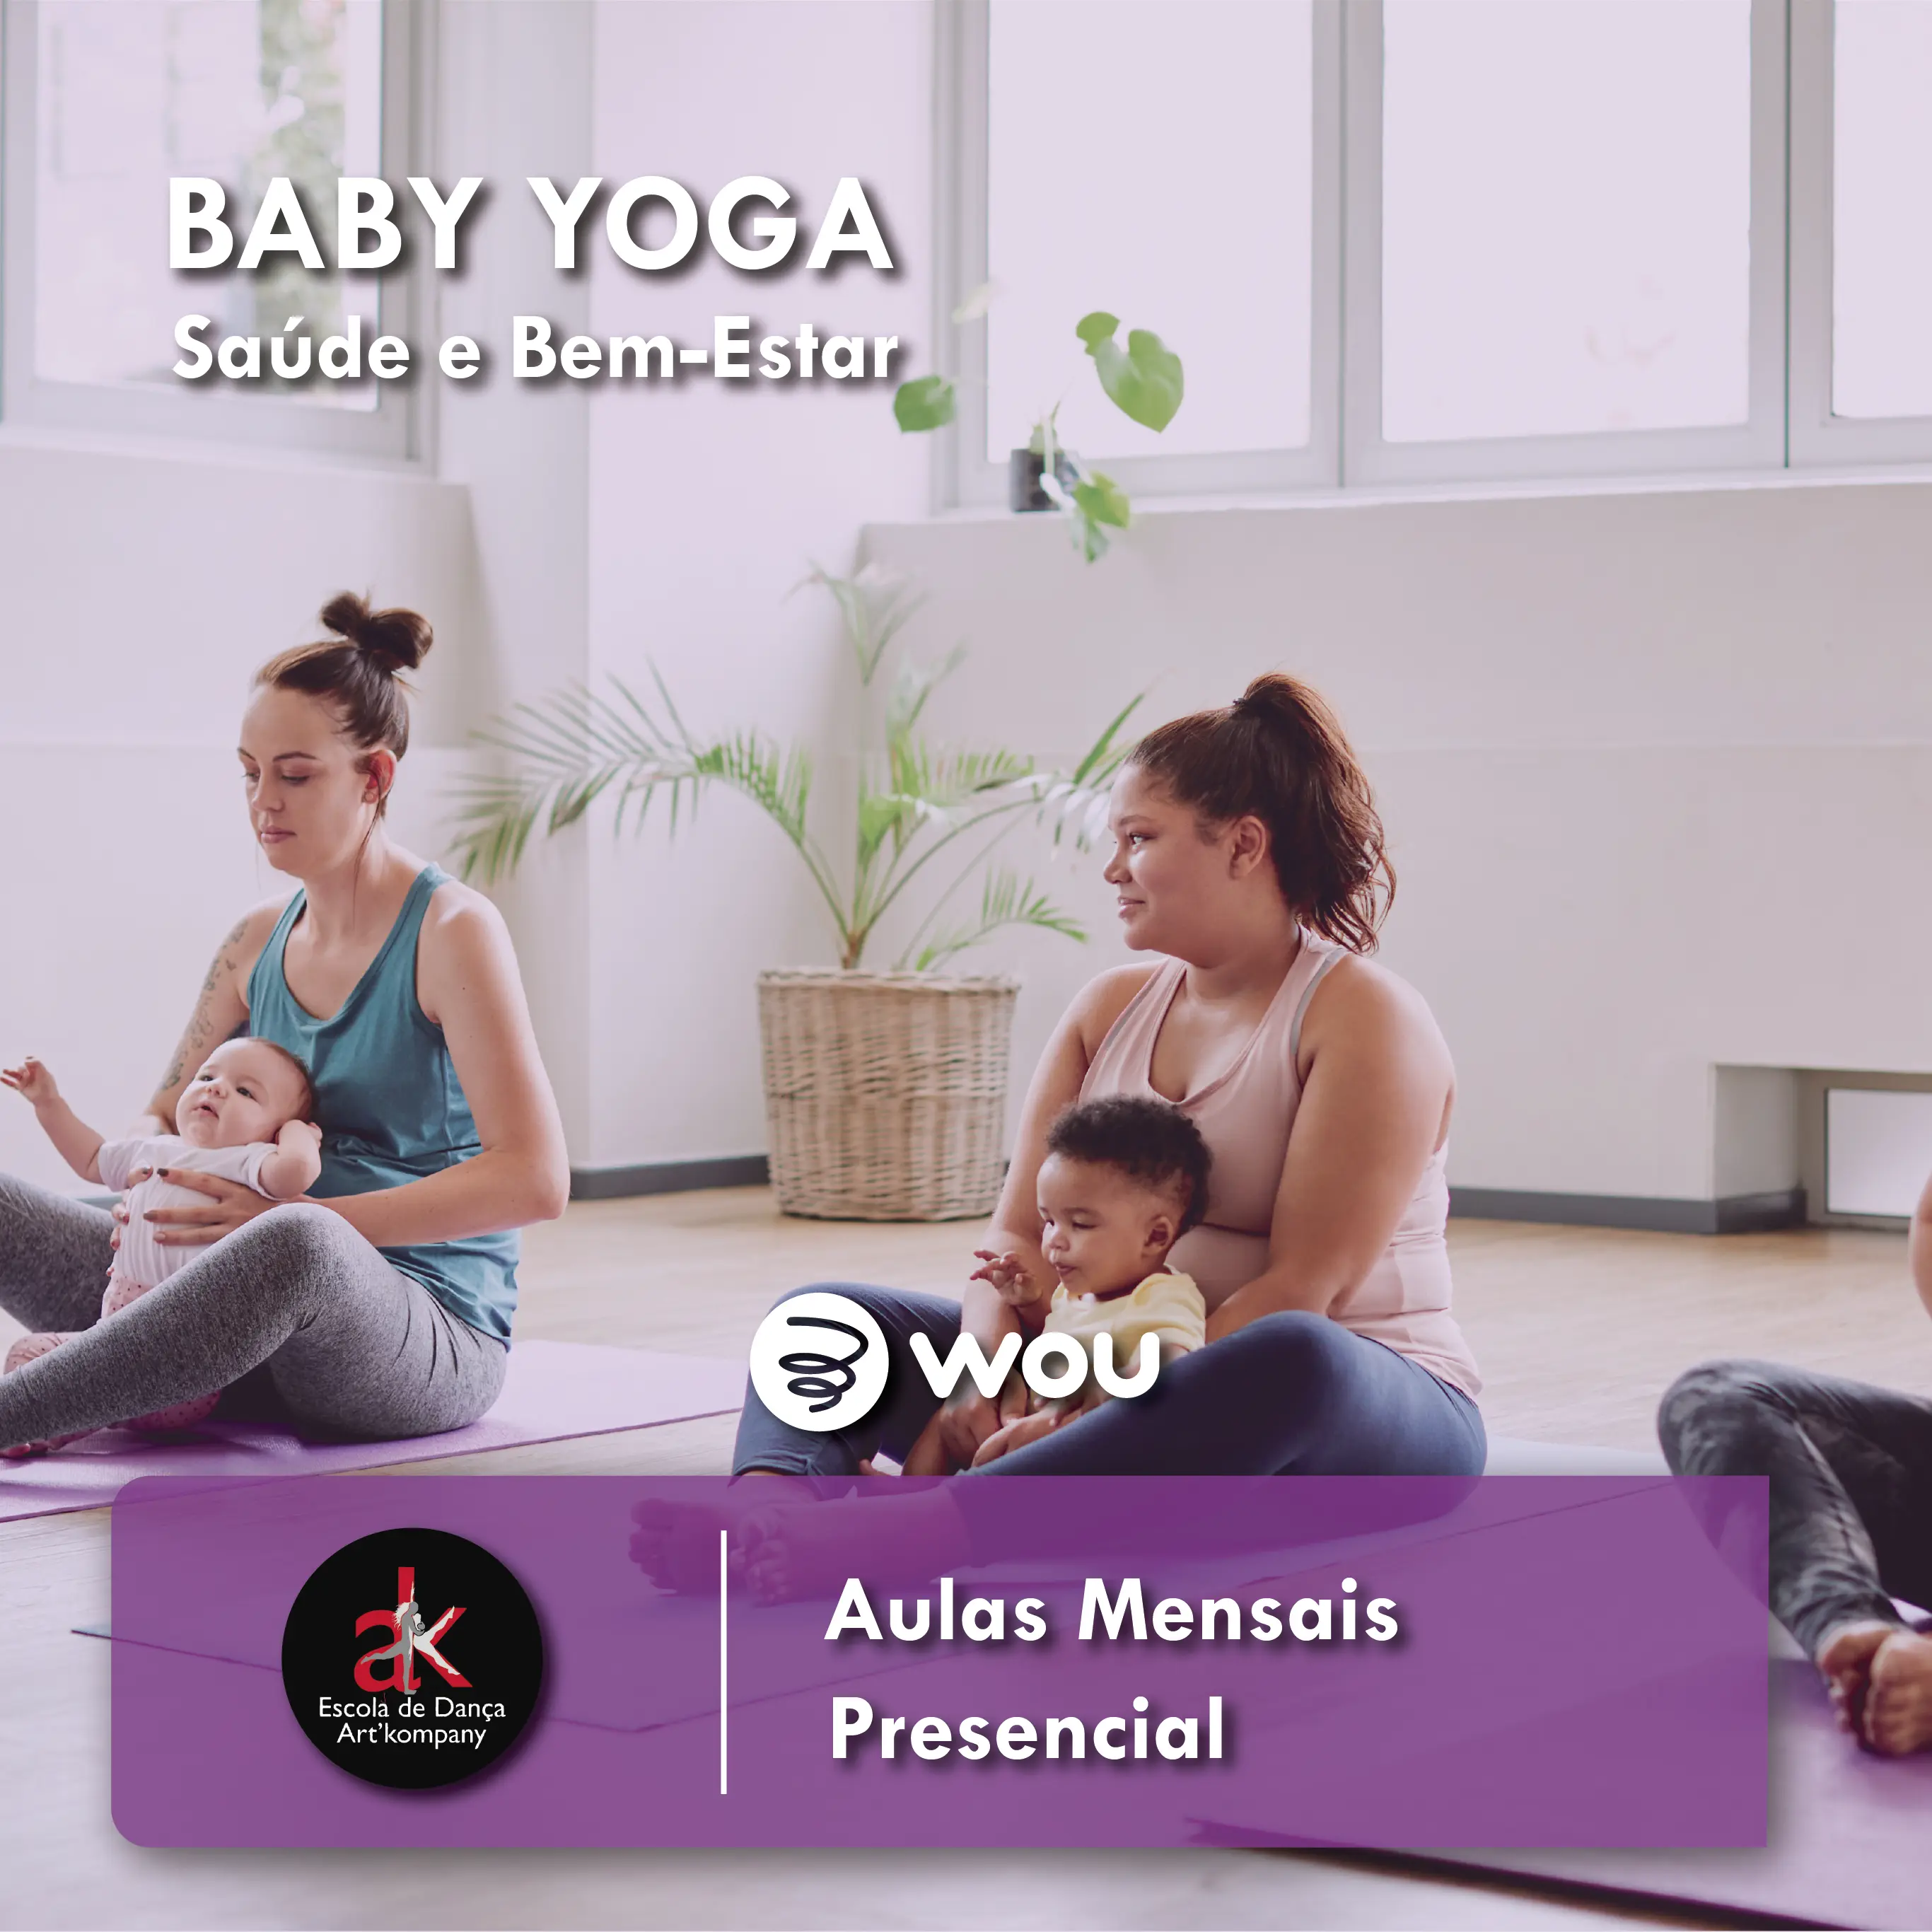 Baby Yoga Classes in Castelo Branco